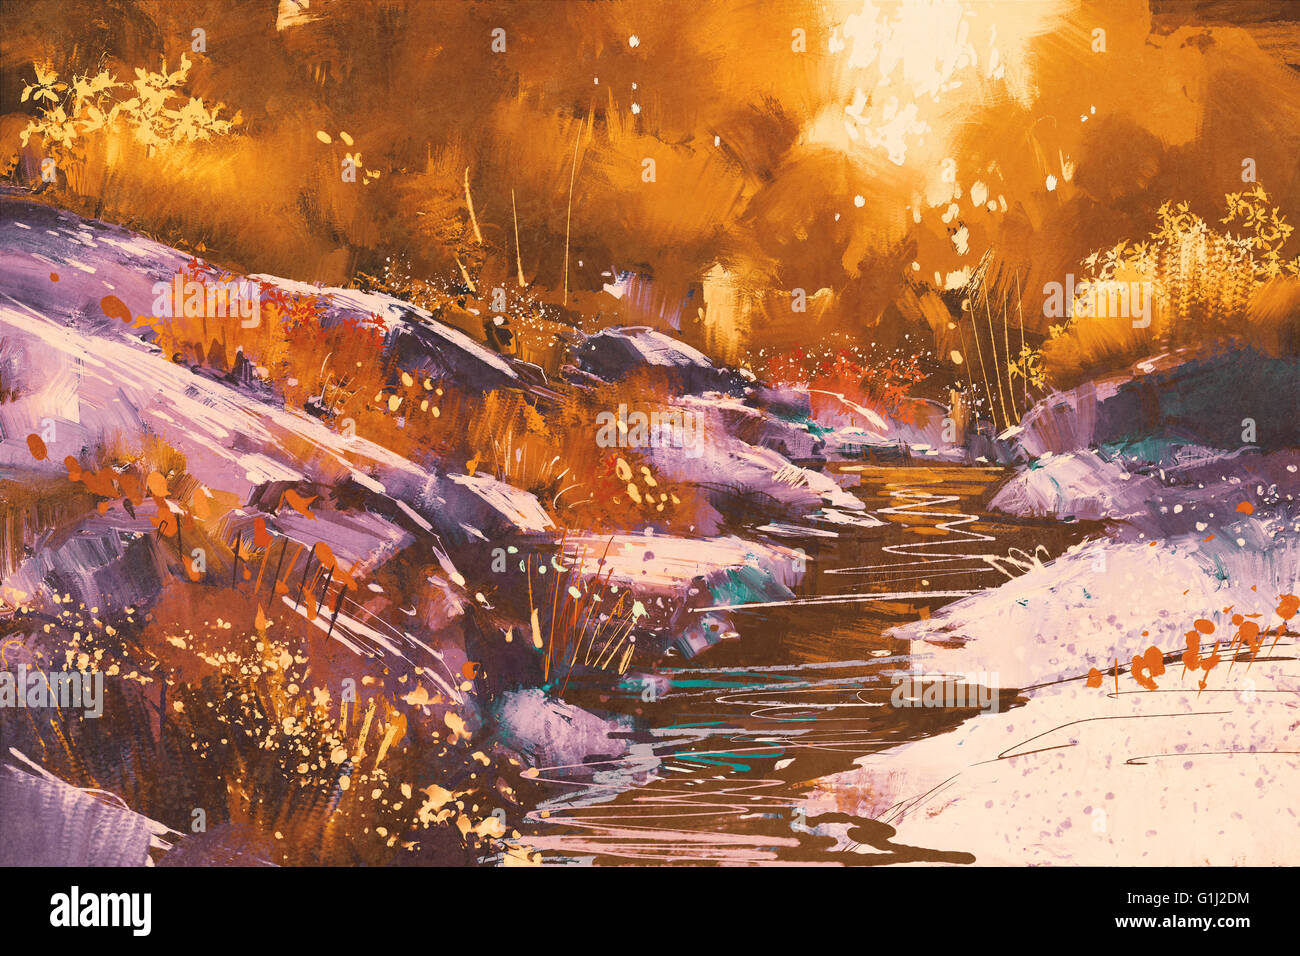 Les lignes de la rivière avec des pierres dans la forêt d'automne,illustration peinture Banque D'Images